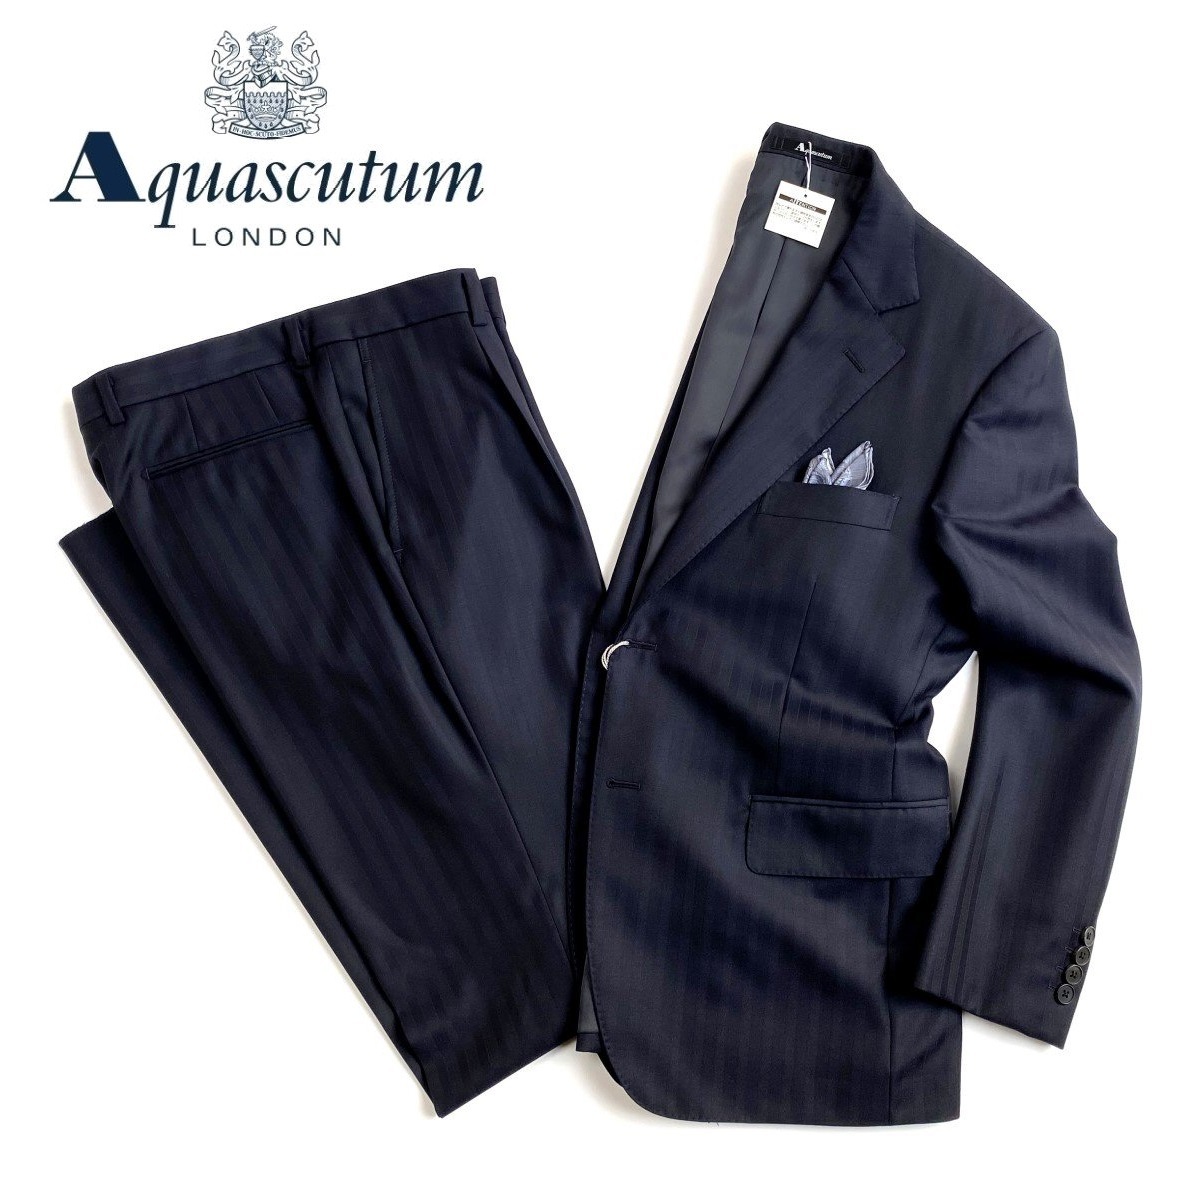 一番人気物 新到着 しなやかな目風と艶が魅力的な一着です Aquascutum 日本製シャドーストライプウールスーツ濃紺 ネイビー総裏仕立て 4irsoa.uj.ac.za 4irsoa.uj.ac.za